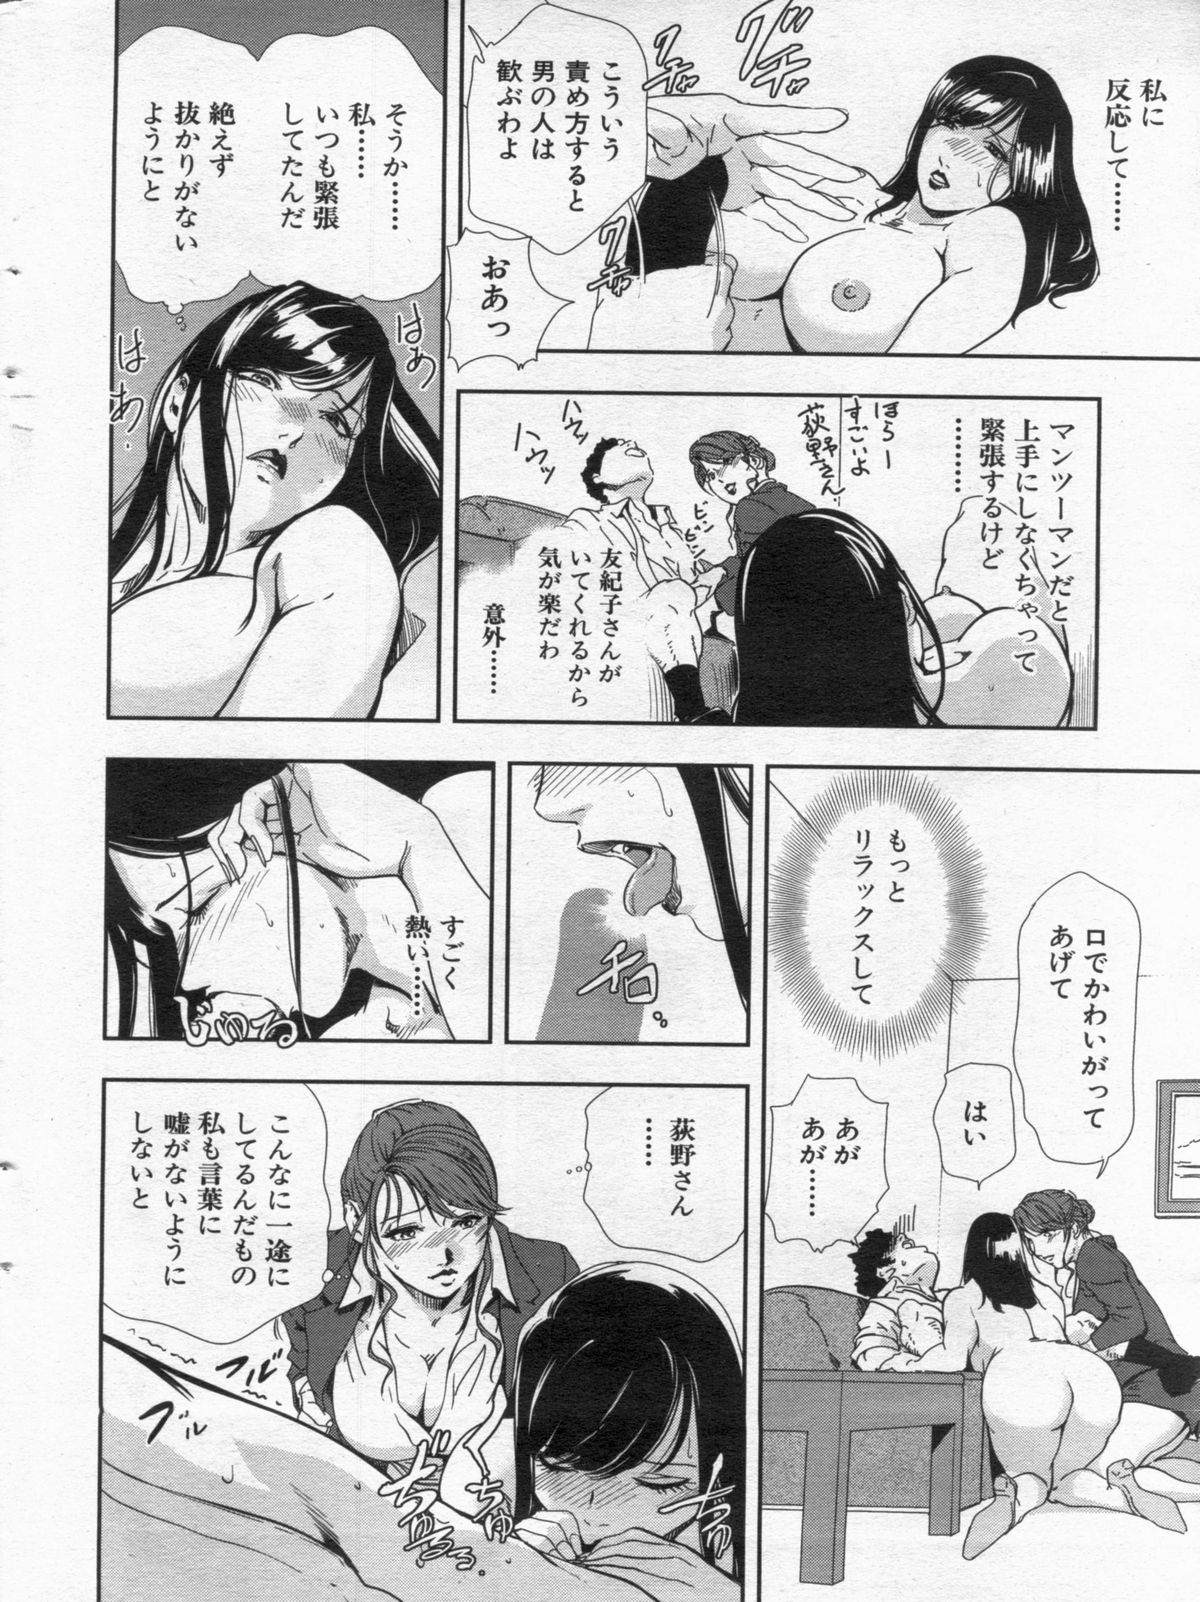 Manga Bon 2013-02 page 24 full